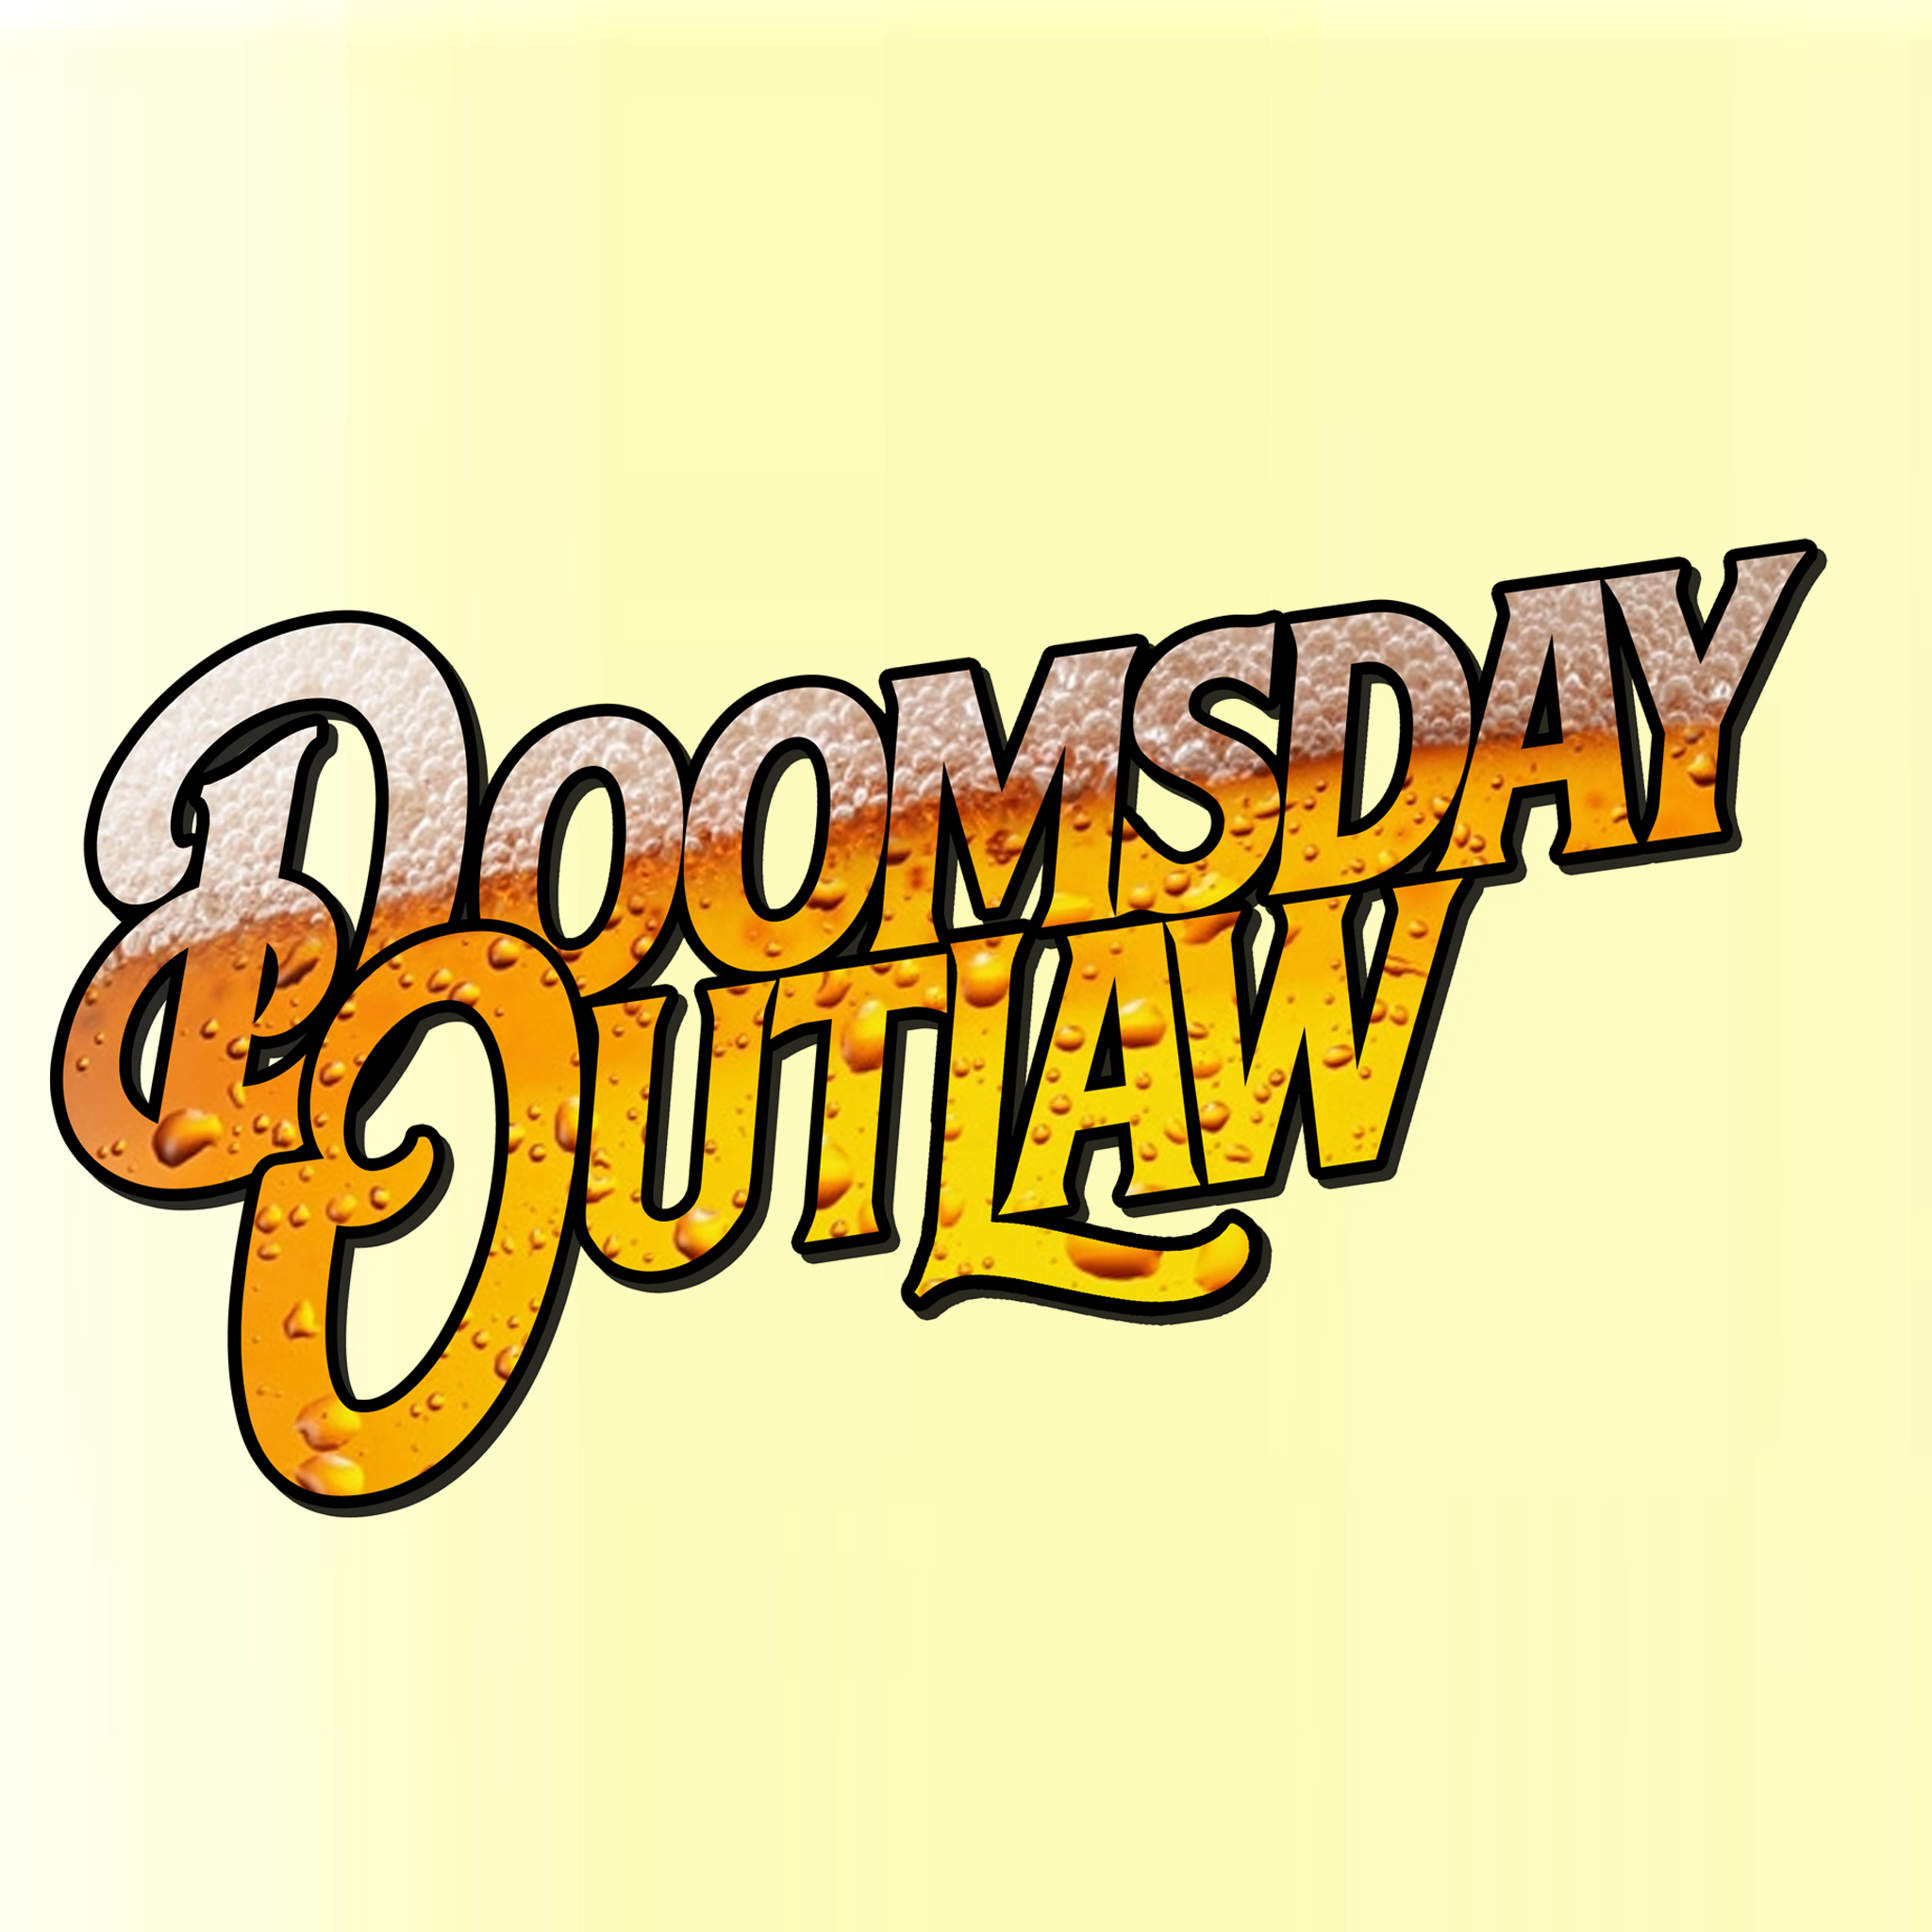 (c) Doomsdayoutlaw.com